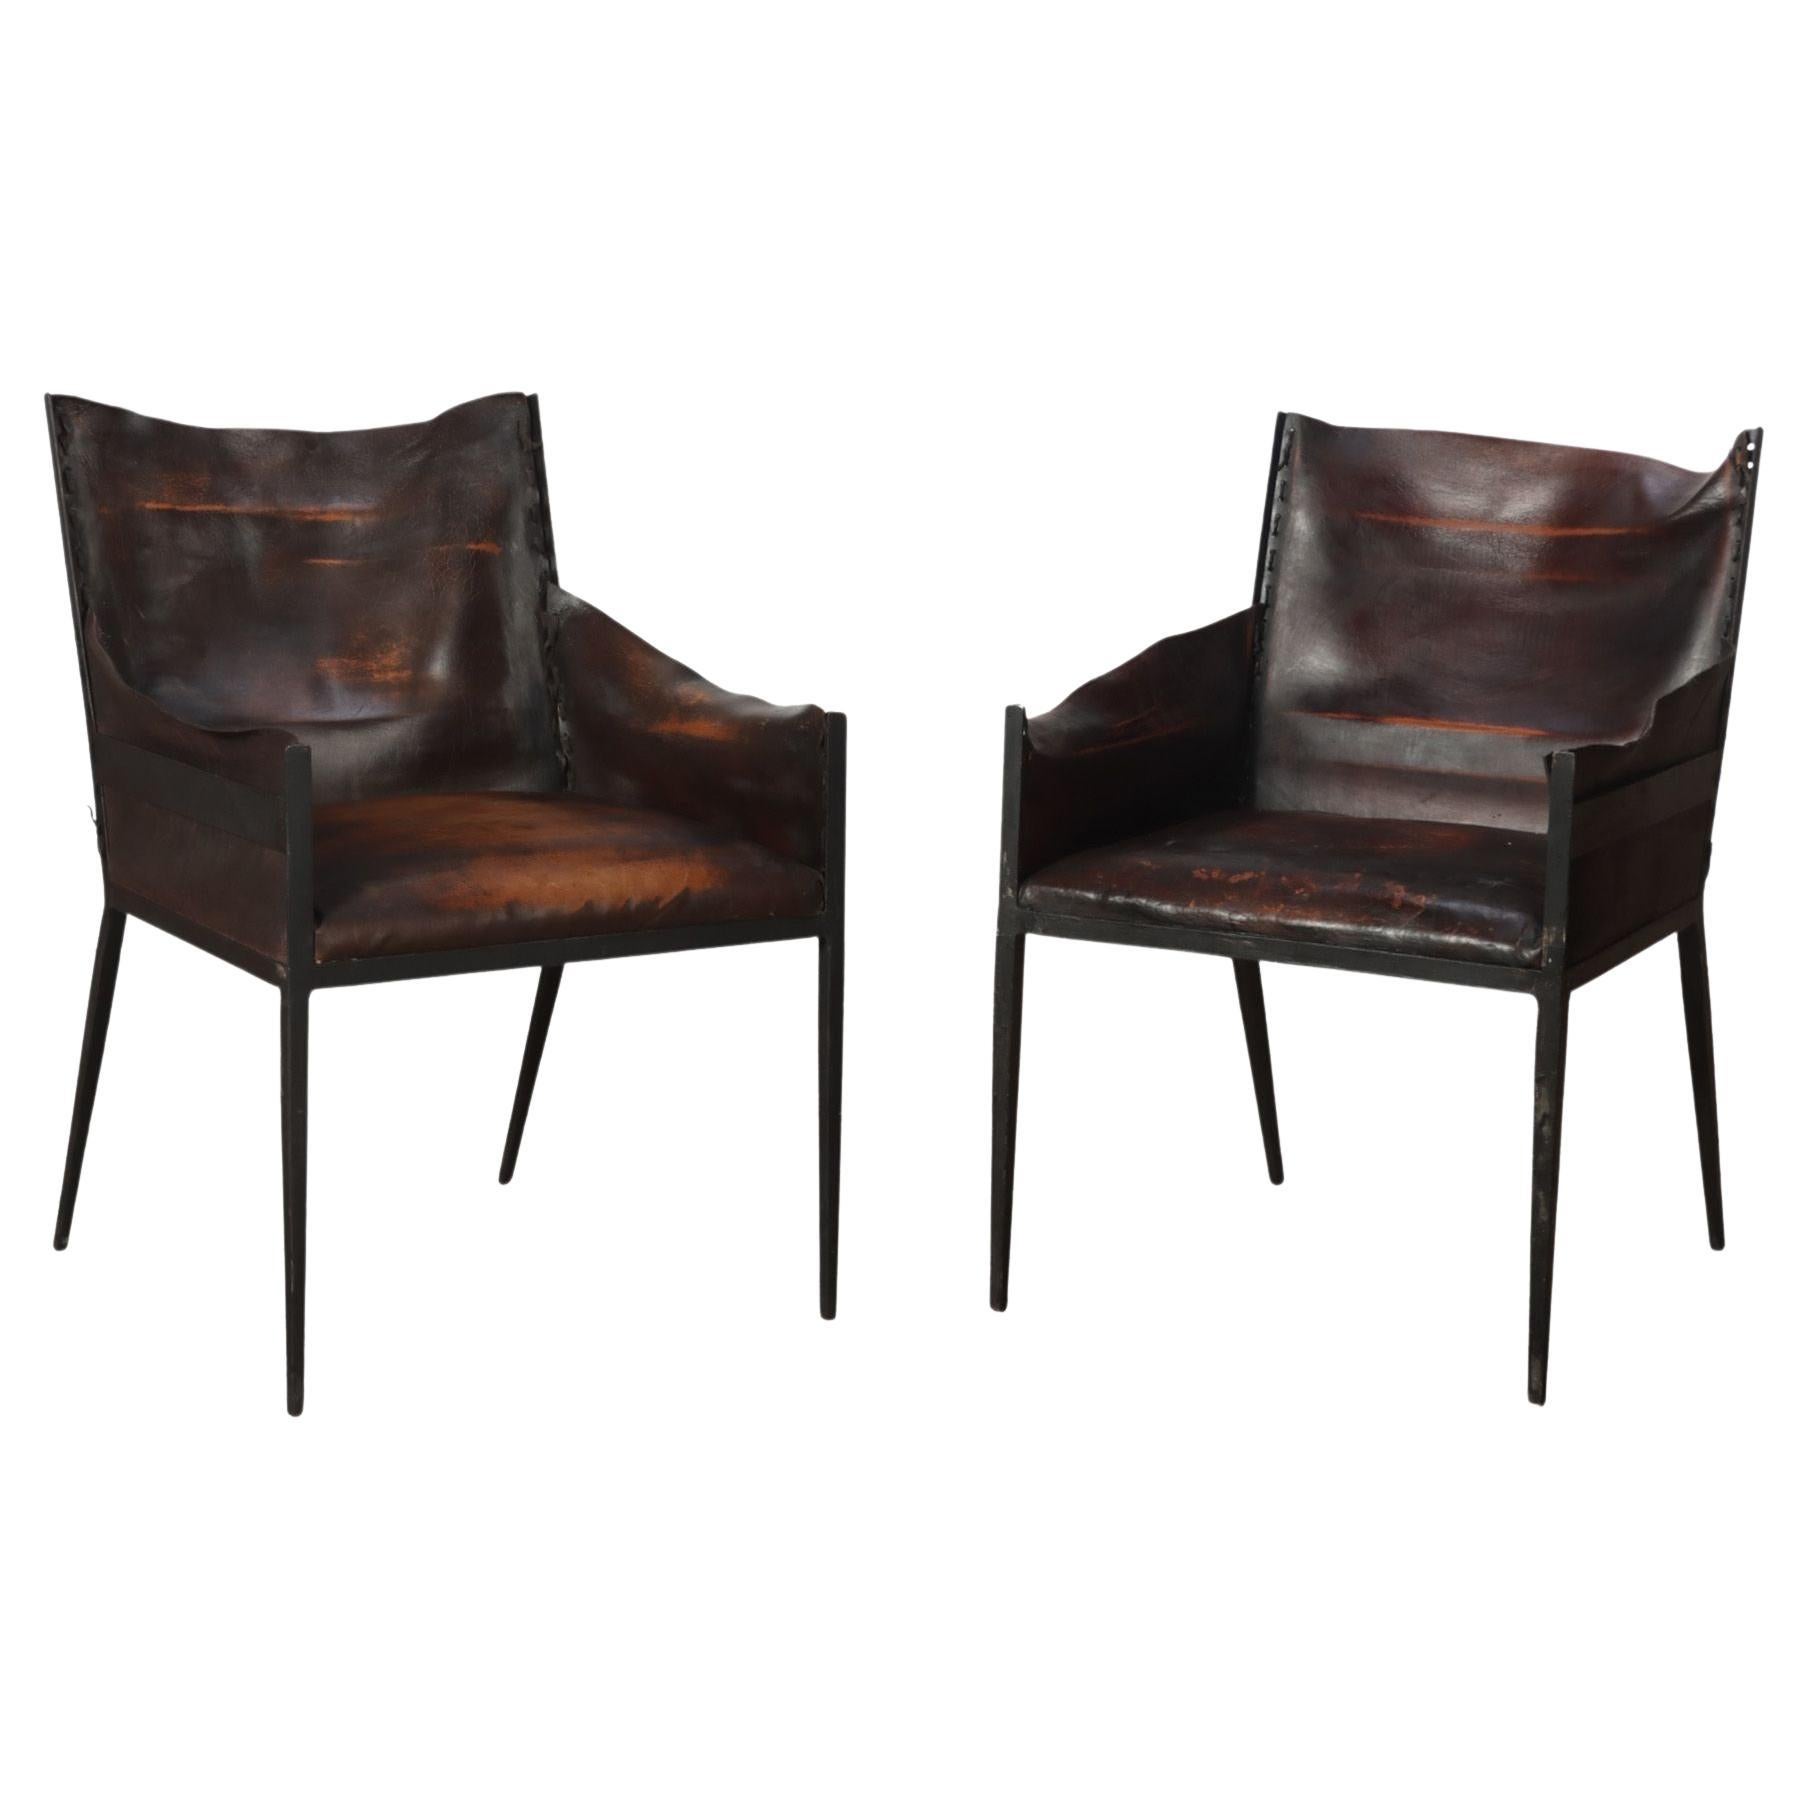 Paire de fauteuils vintage en fer et cuir, contemporains